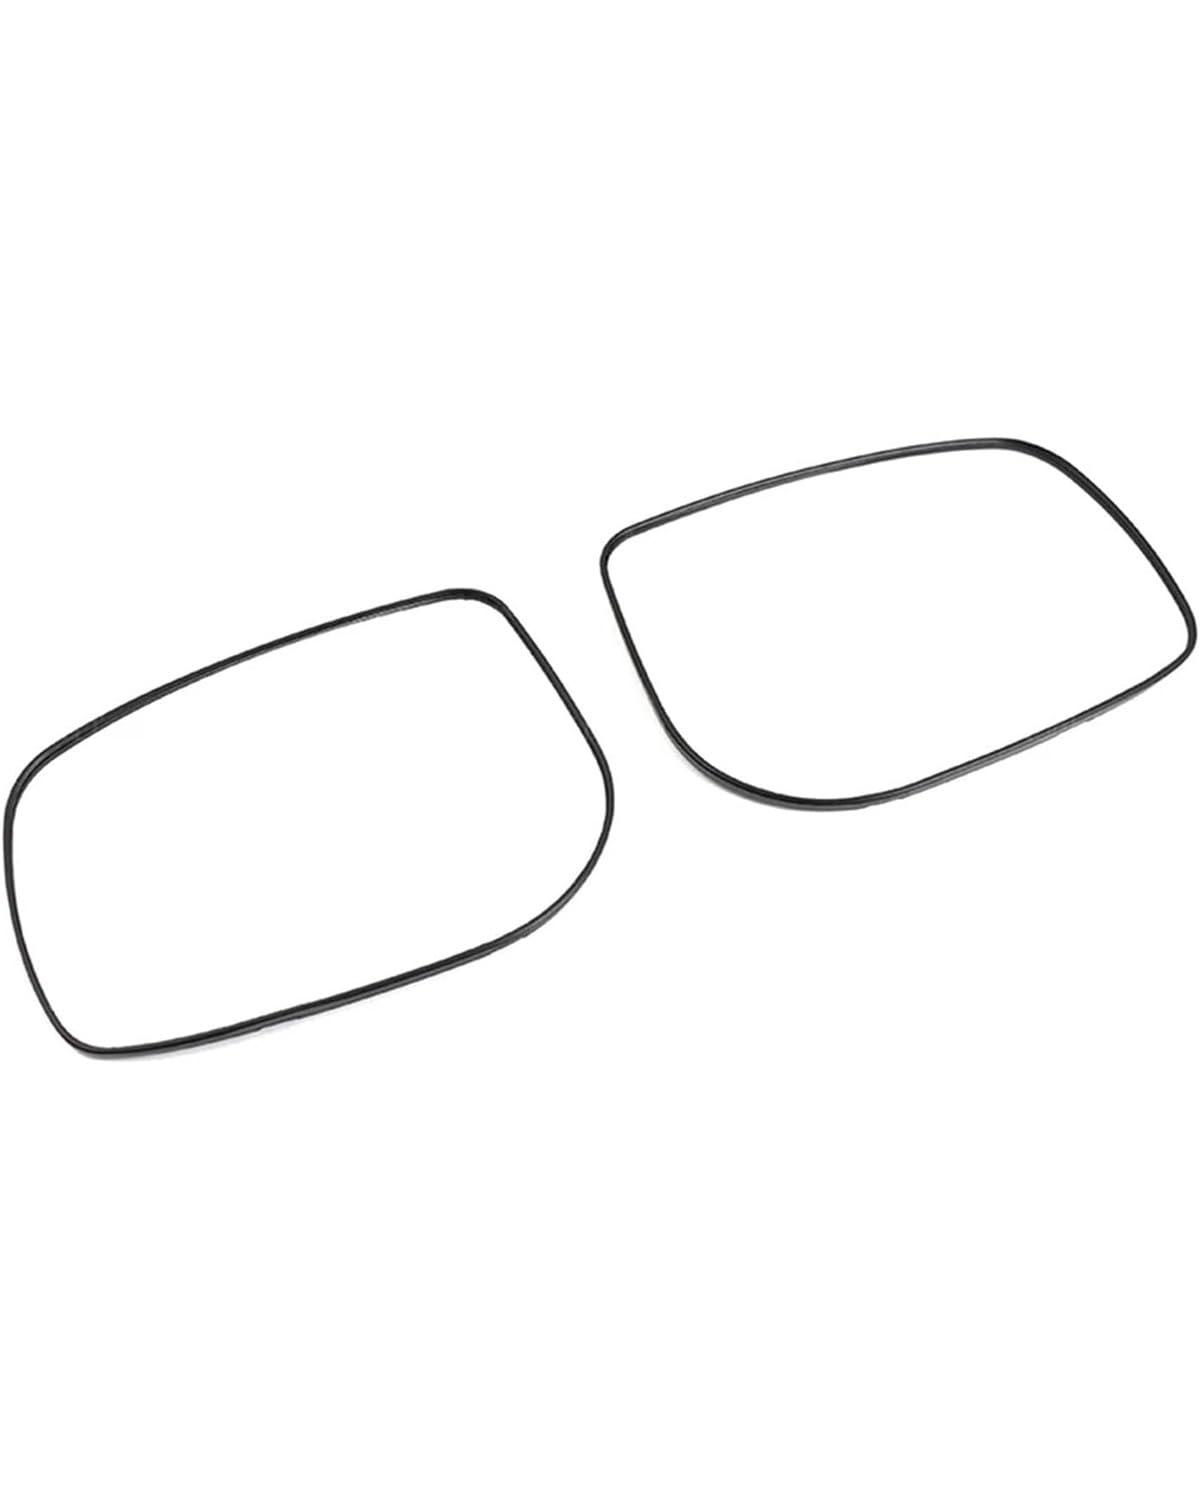 Auto Sonnenschutz Vorhang Für Reiz Für Mark-X Für X120 Für GRX130 2006-2009 Umkehrrückspiegellinse Autorückspiegel Seitenflügel Beheiztes Rückspiegelglas Car Shades(Right) von MXDDWLKJ